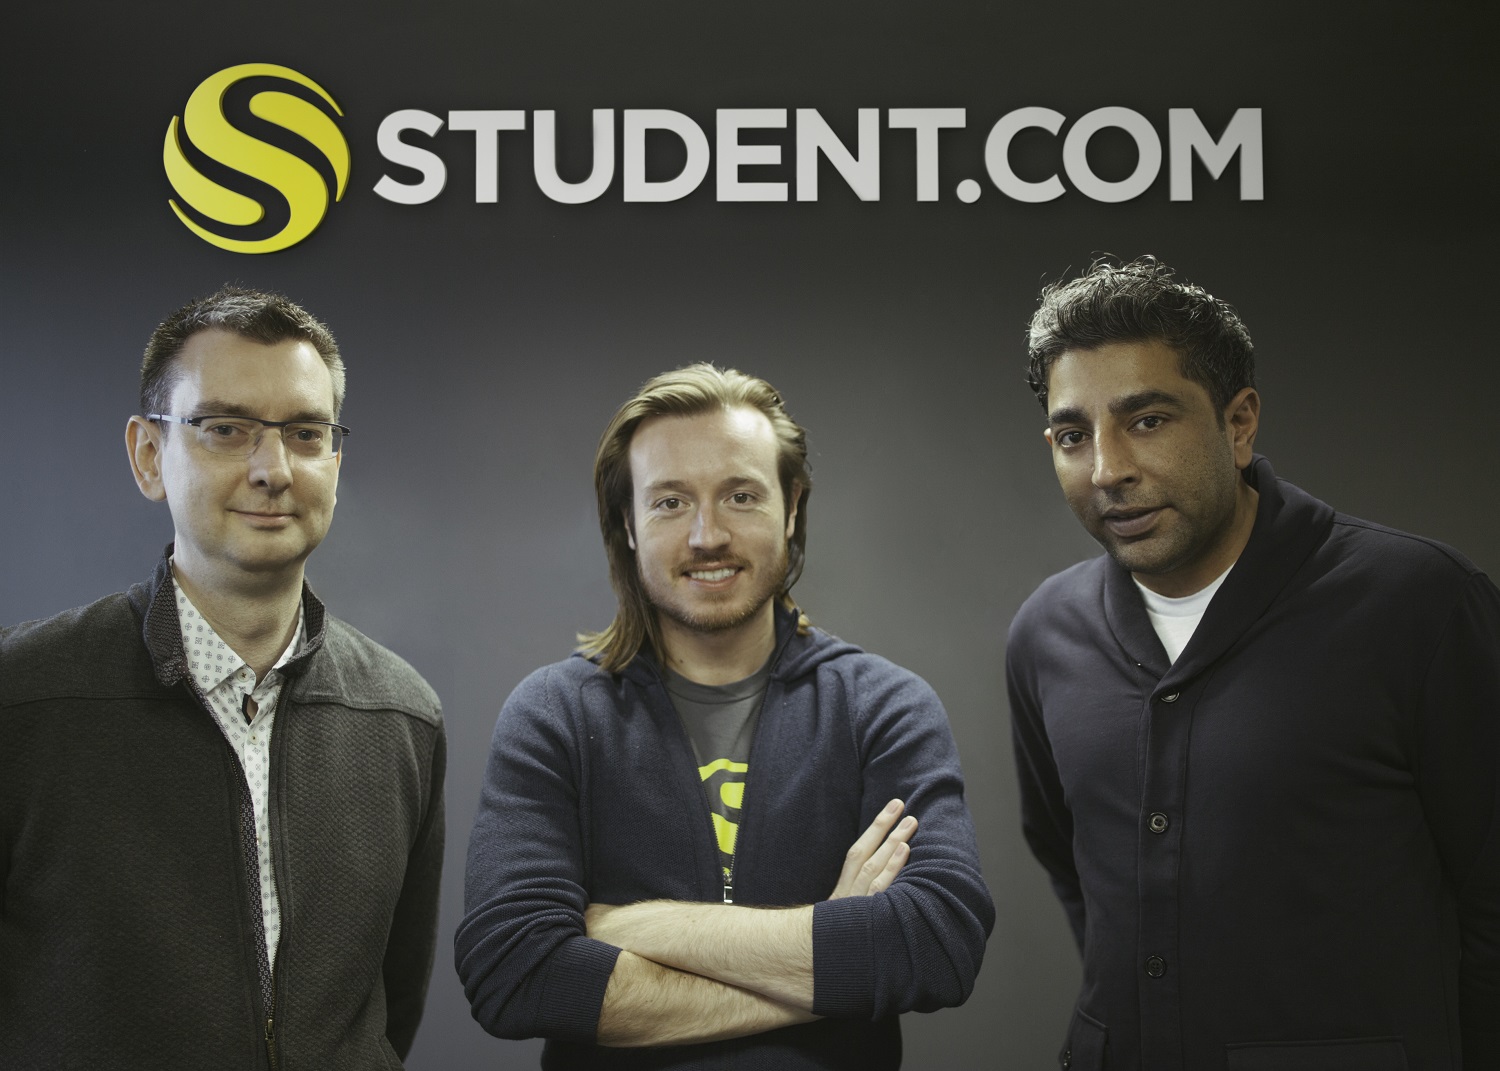 Student.com recibe 10 millones de dólares de financiación